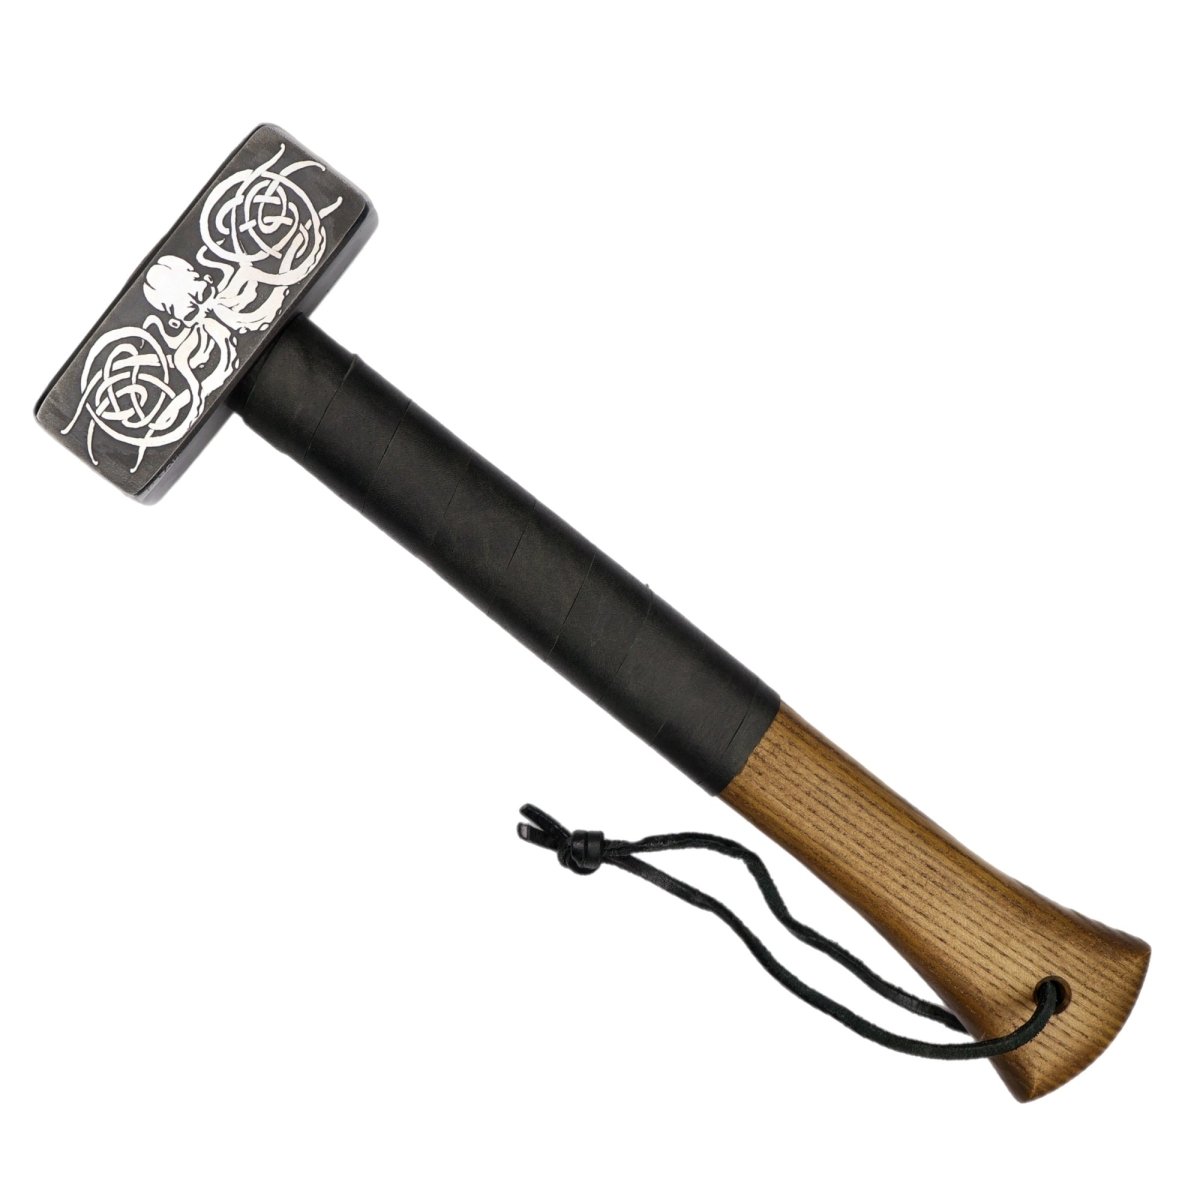 Handmade viking hammer "Kraken" 4.18lb from AncientSmithy